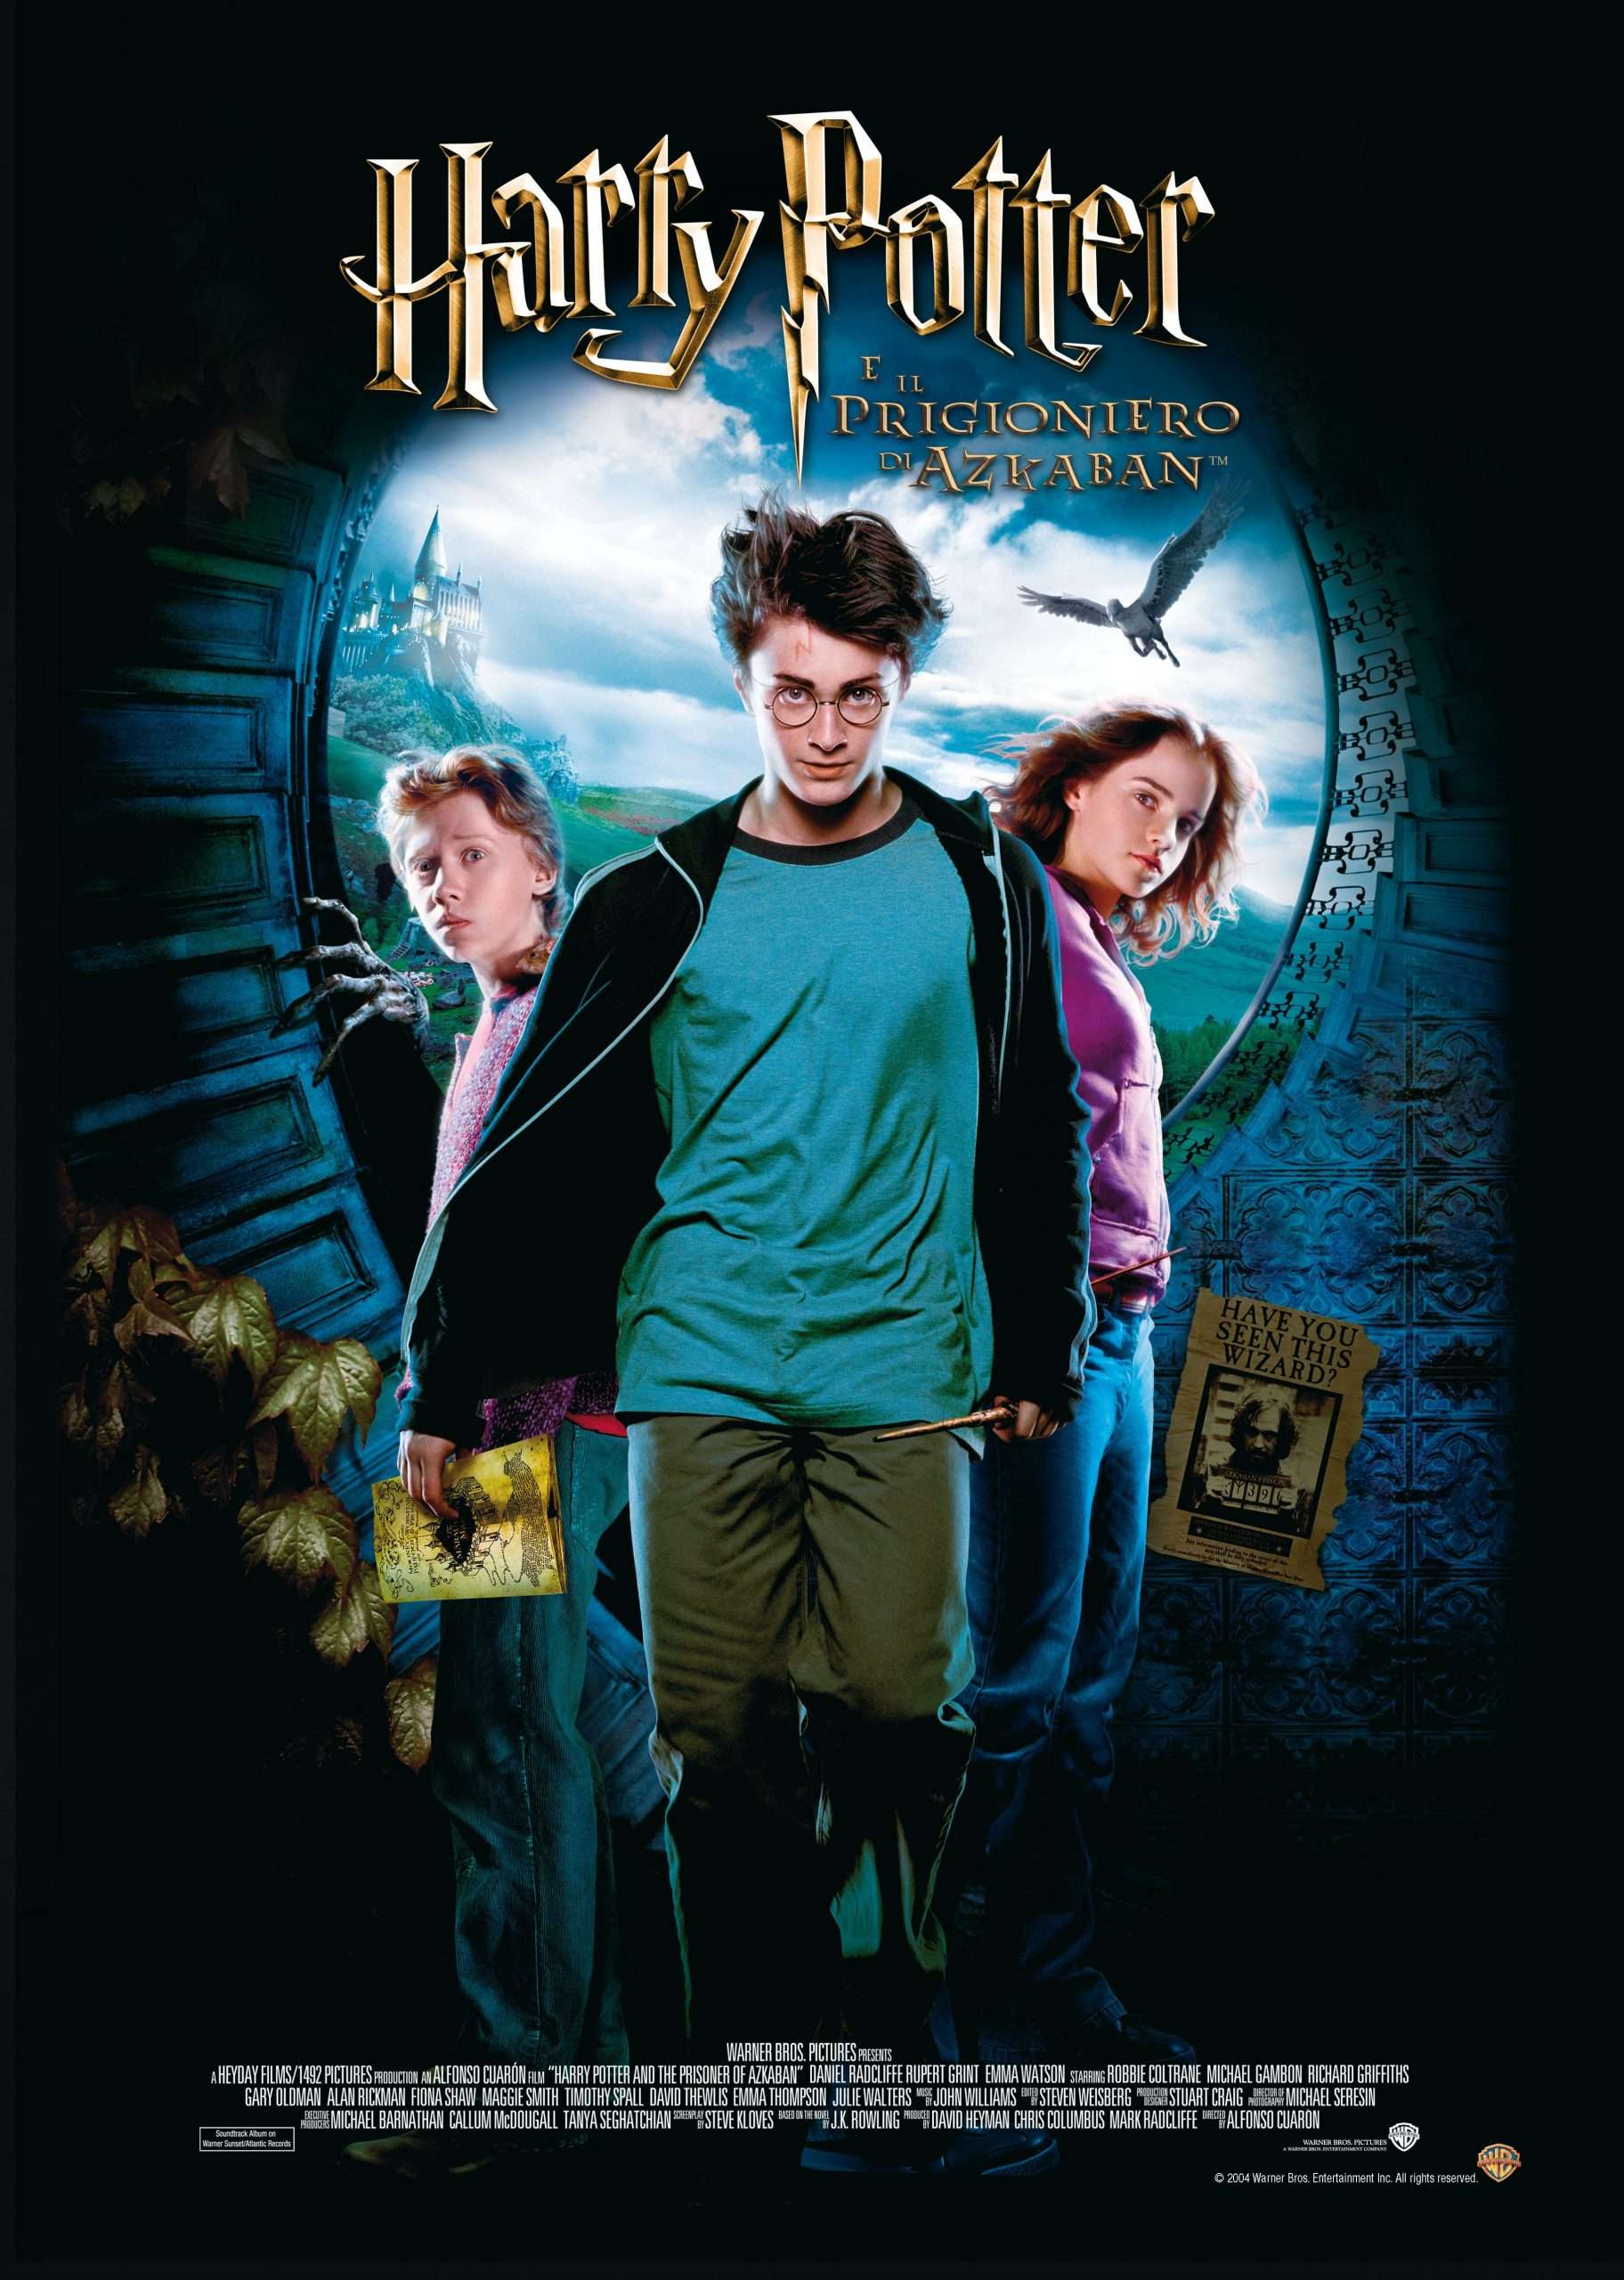 Harry potter and the prisoner of azkaban pdf full movie ...